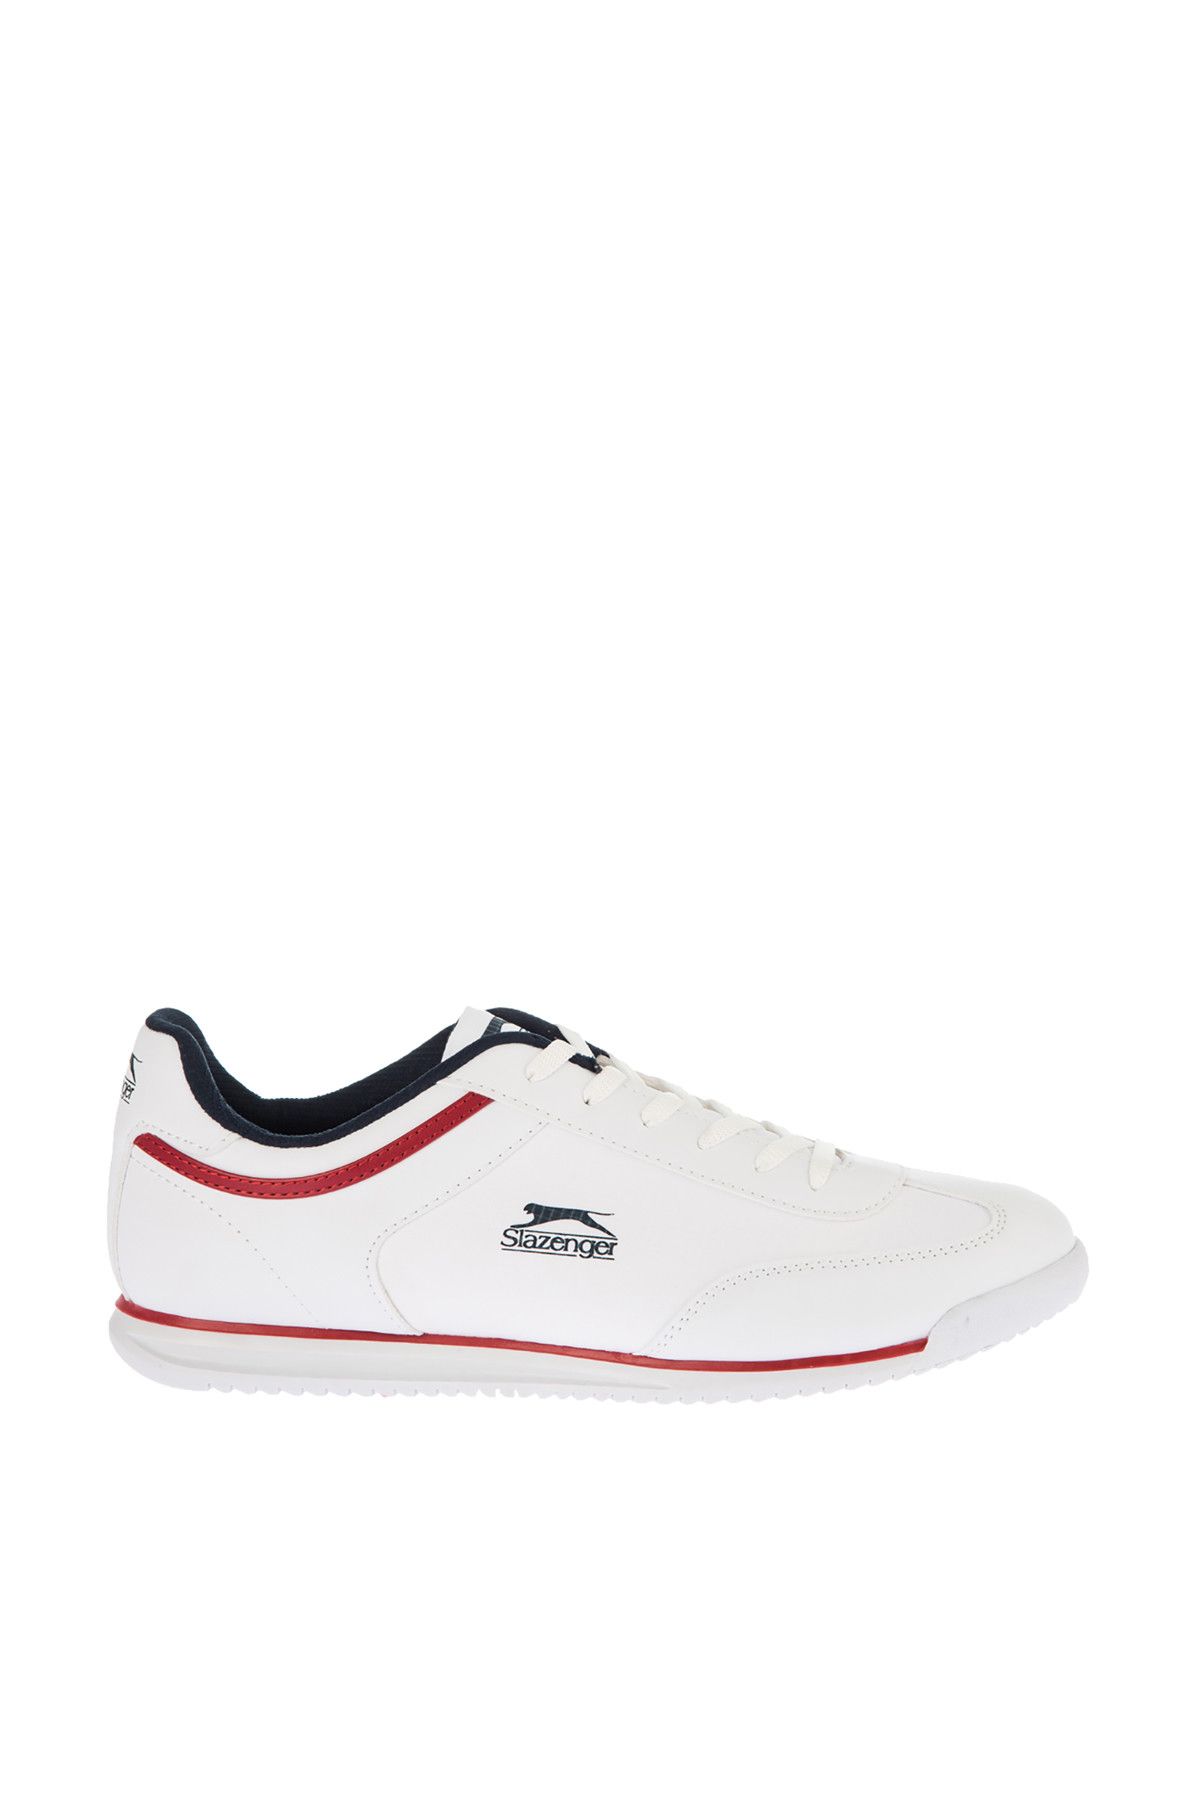 Slazenger Mojo Sneaker Erkek Ayakkabı Beyaz